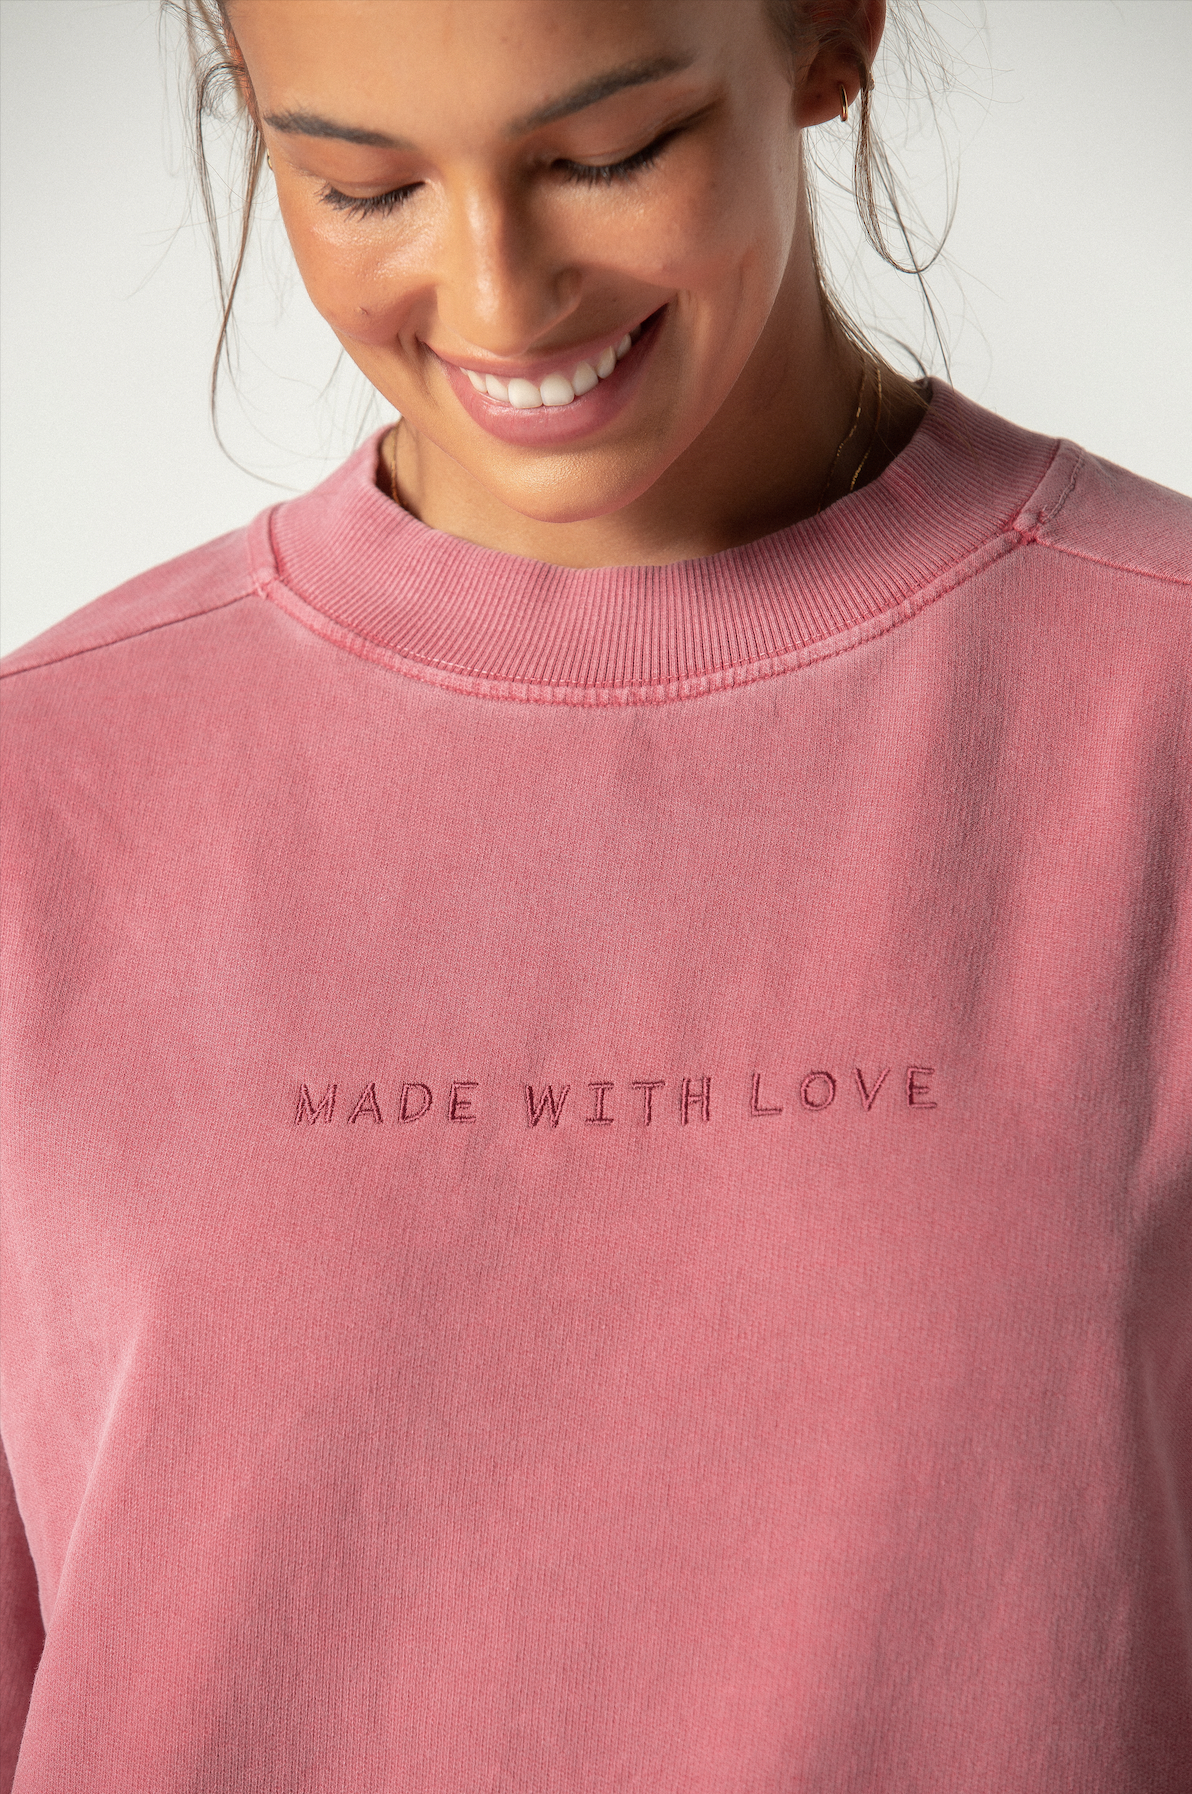 Made with Love sweatshirt